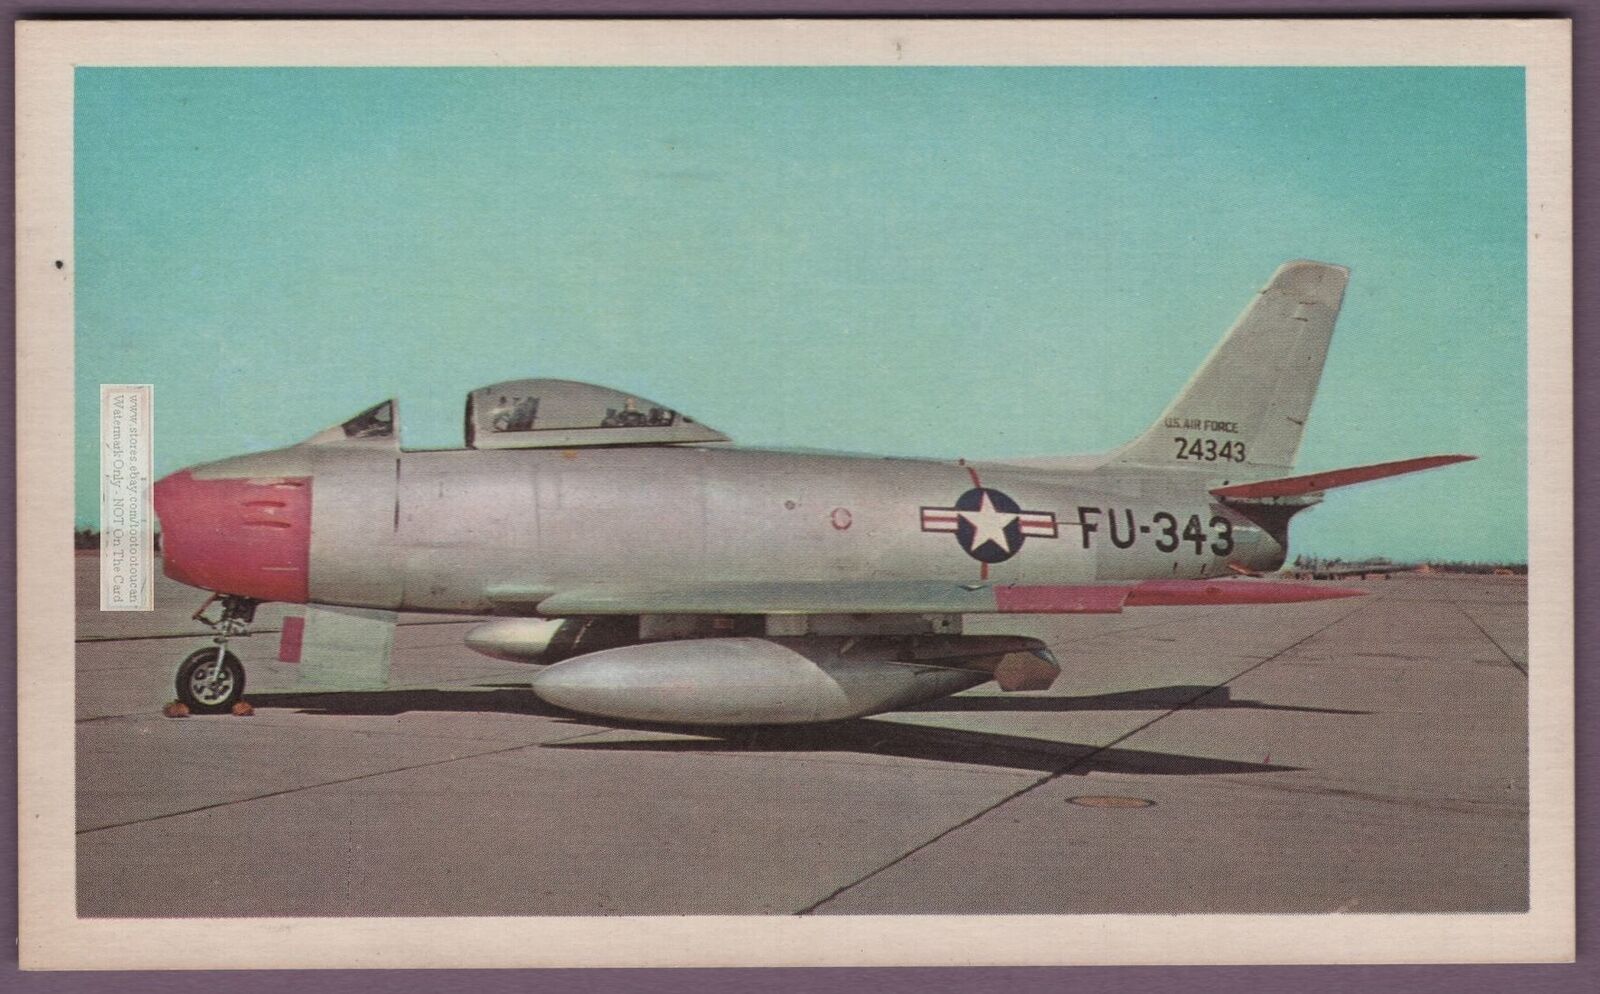 North American F-86 'Sabre' Jet Fighter Vintage Card